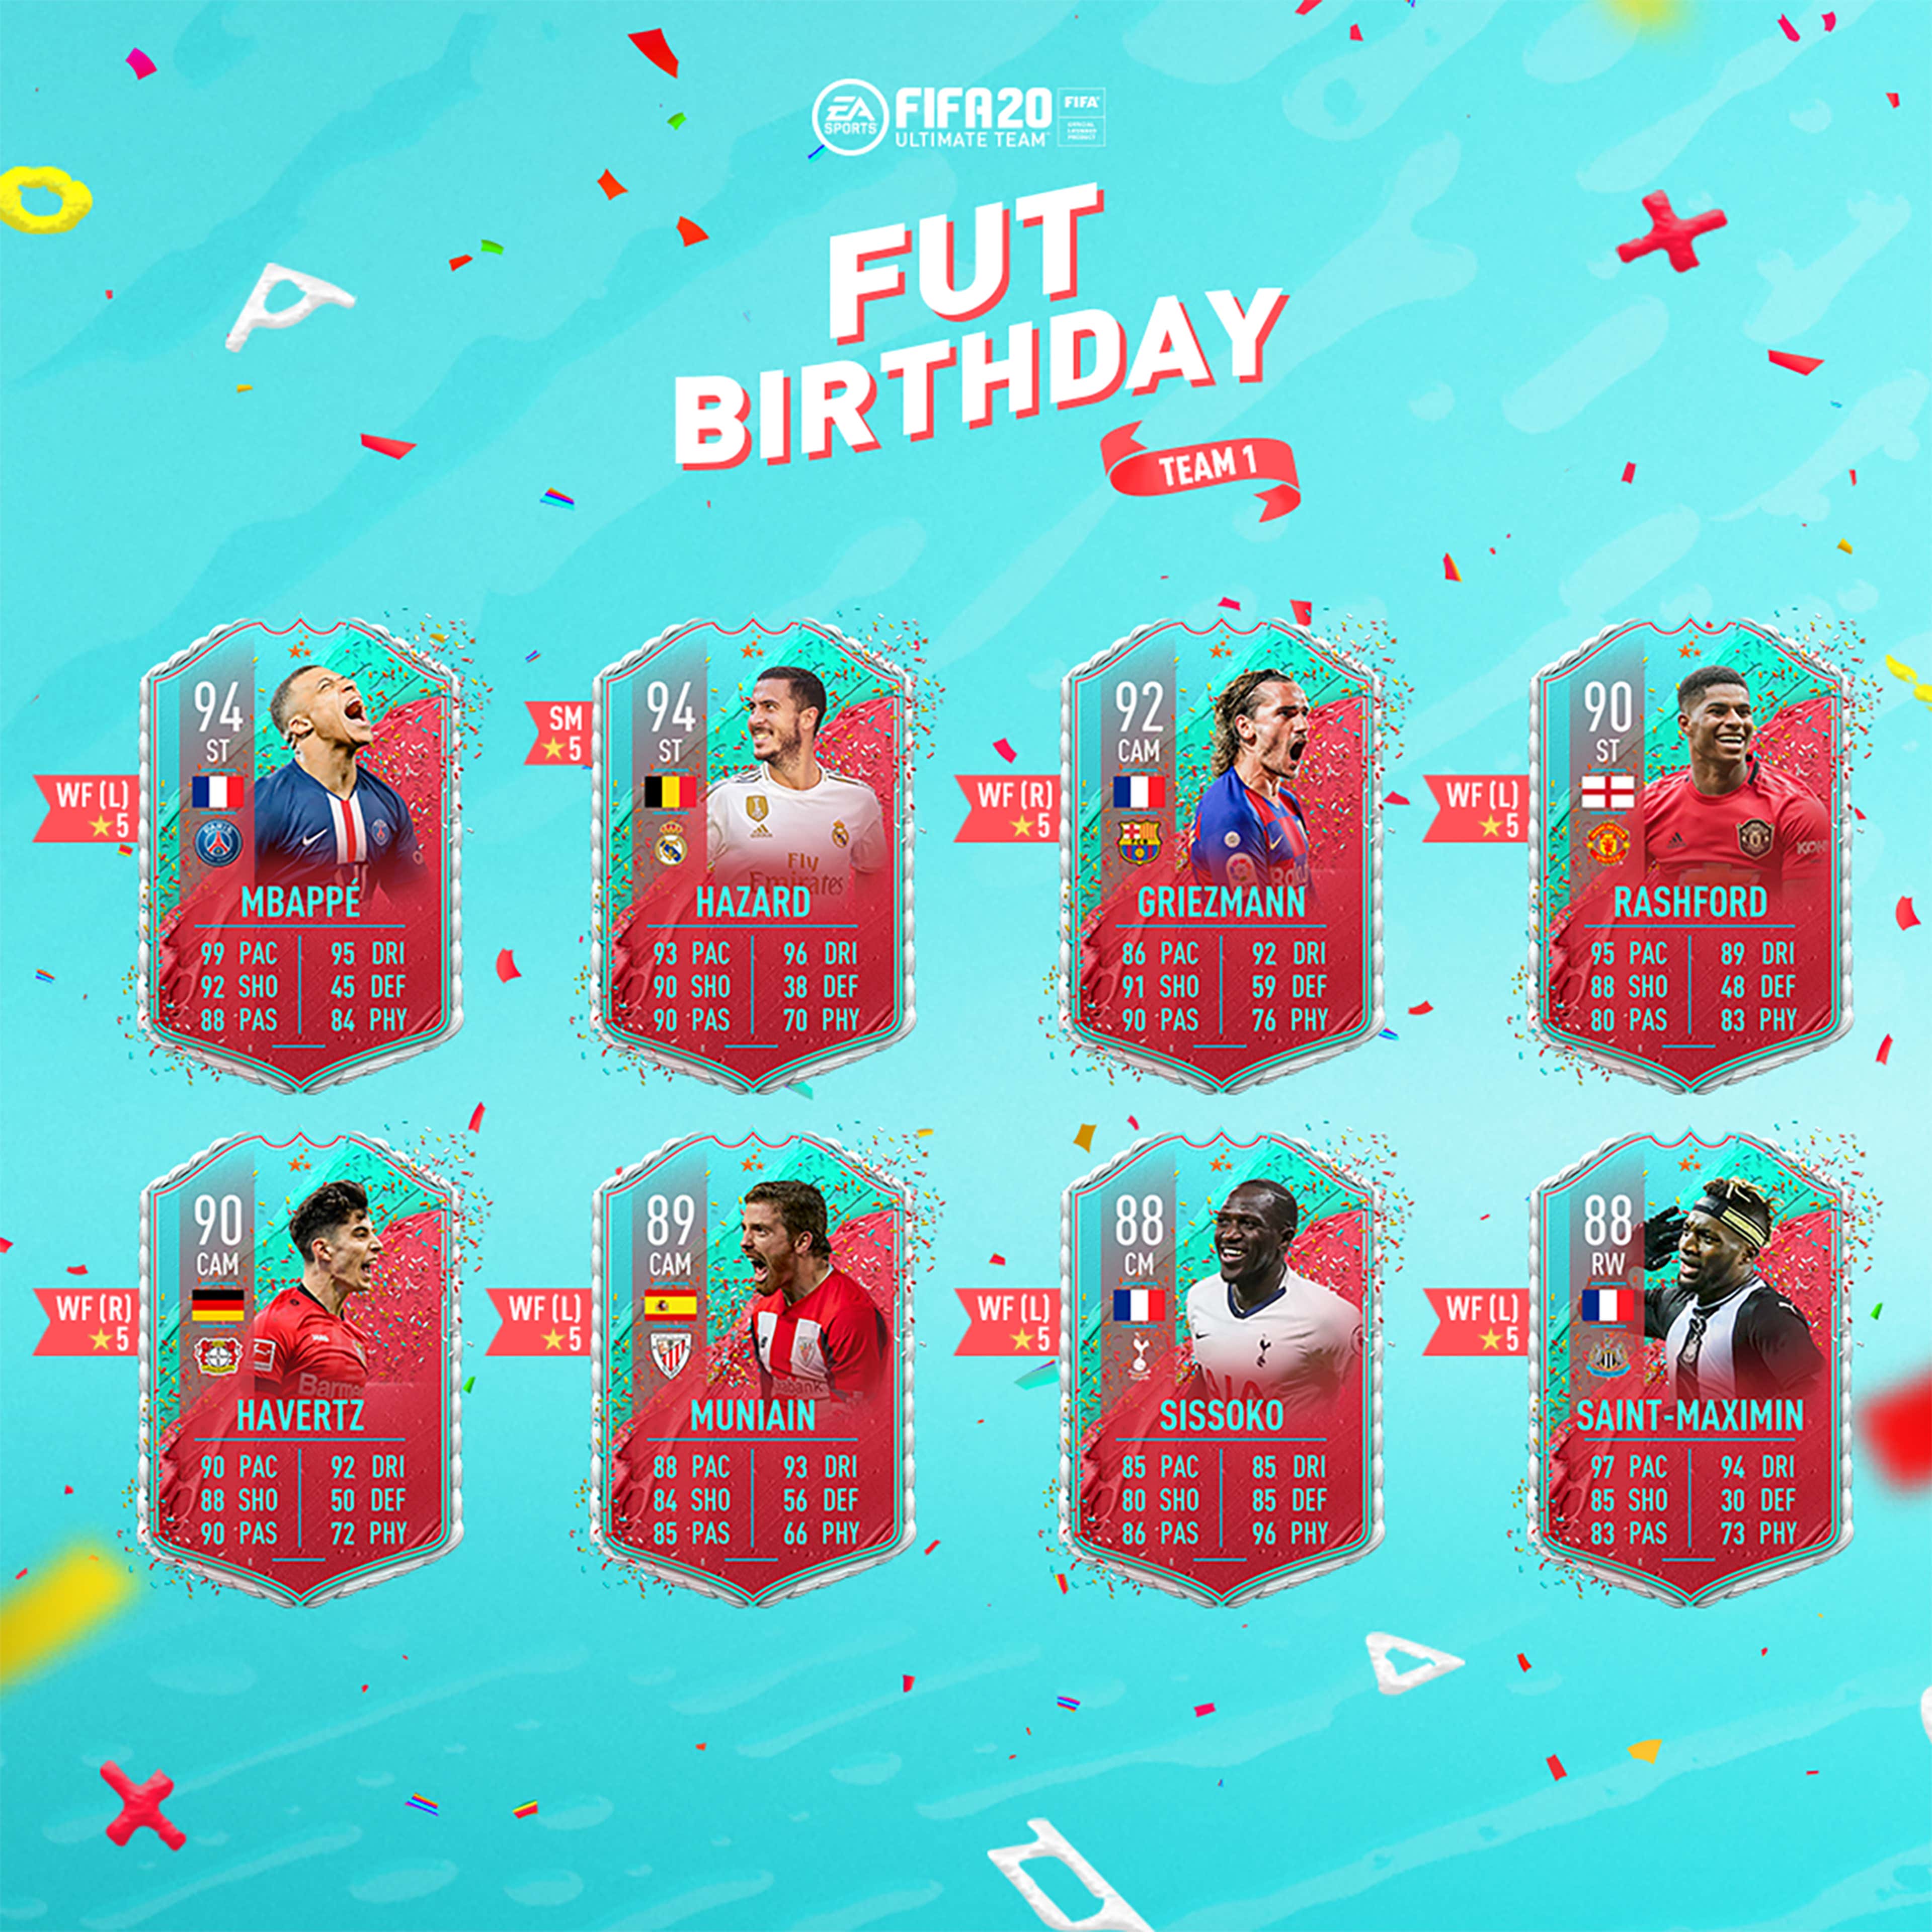 Fut birthday. FUTBIRTHDAY FIFA 20. FUTBIRTHDAY FIFA 19.